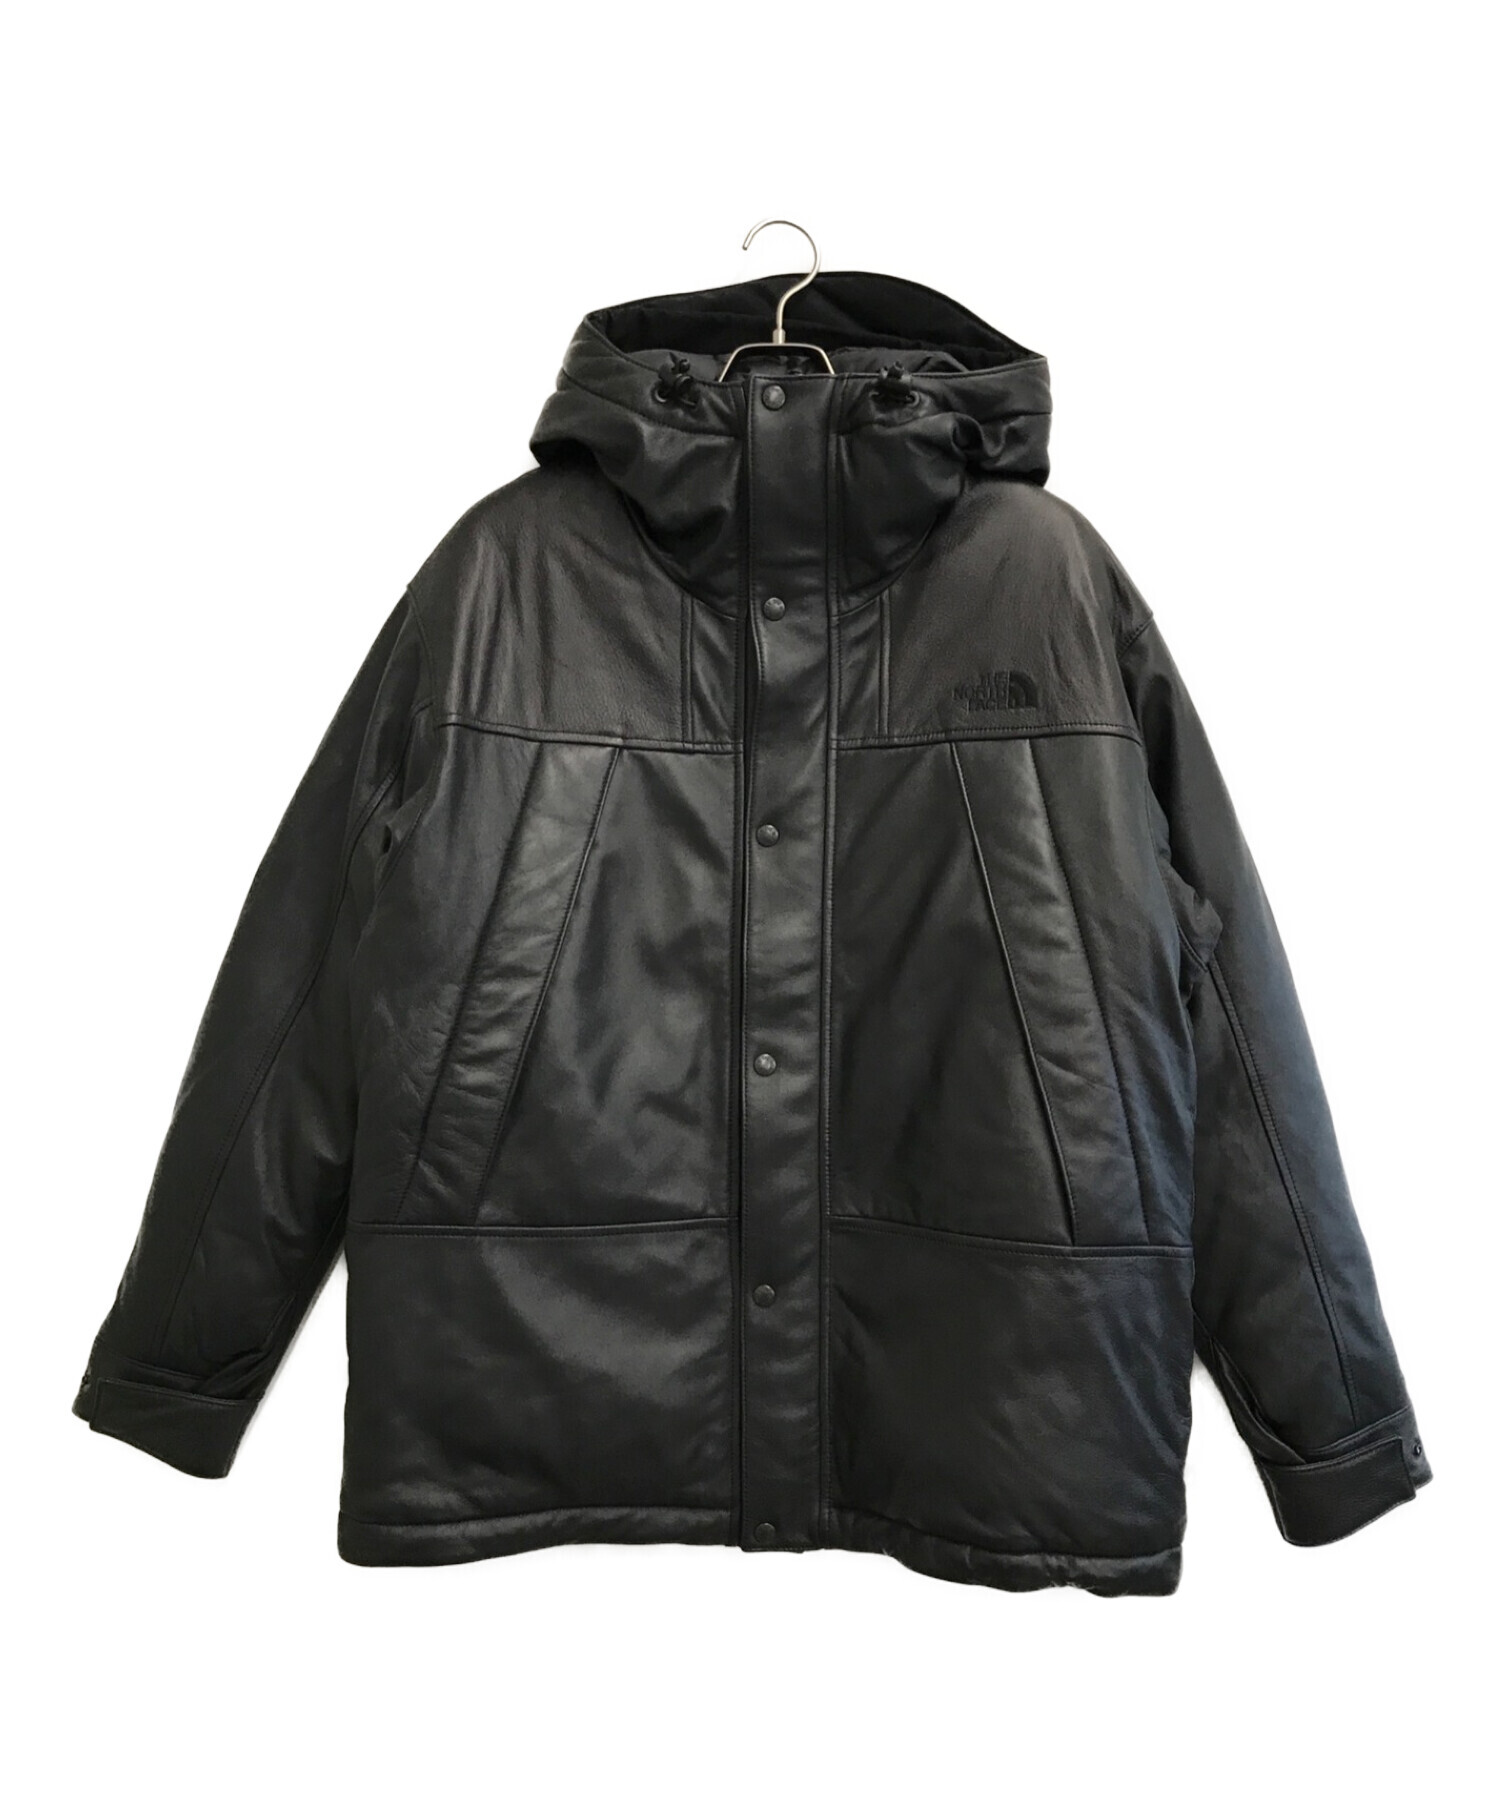 THE NORTHFACE PURPLELABEL (ザ・ノースフェイス パープルレーベル) Mountain Down Leather Jacket  ブラック サイズ:L 未使用品